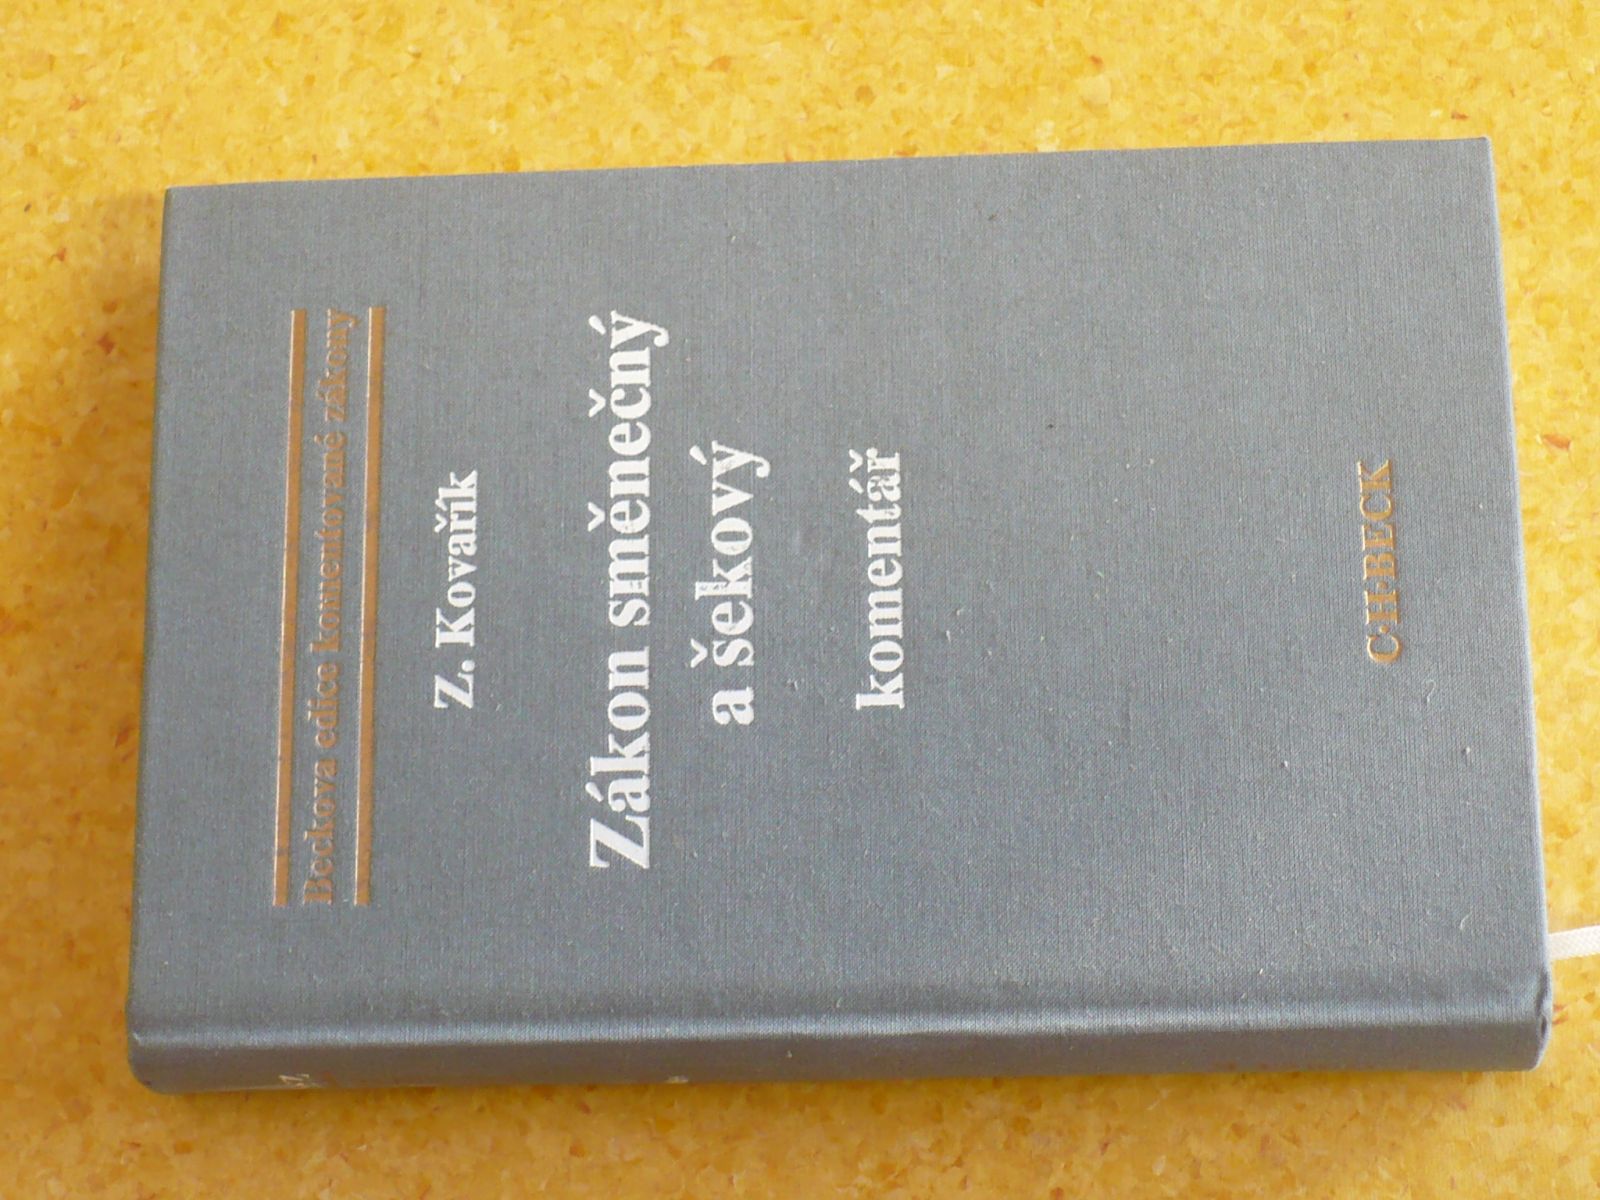 Zdeněk Kovařík - Zákon směnečný a šekový (1997) komentář